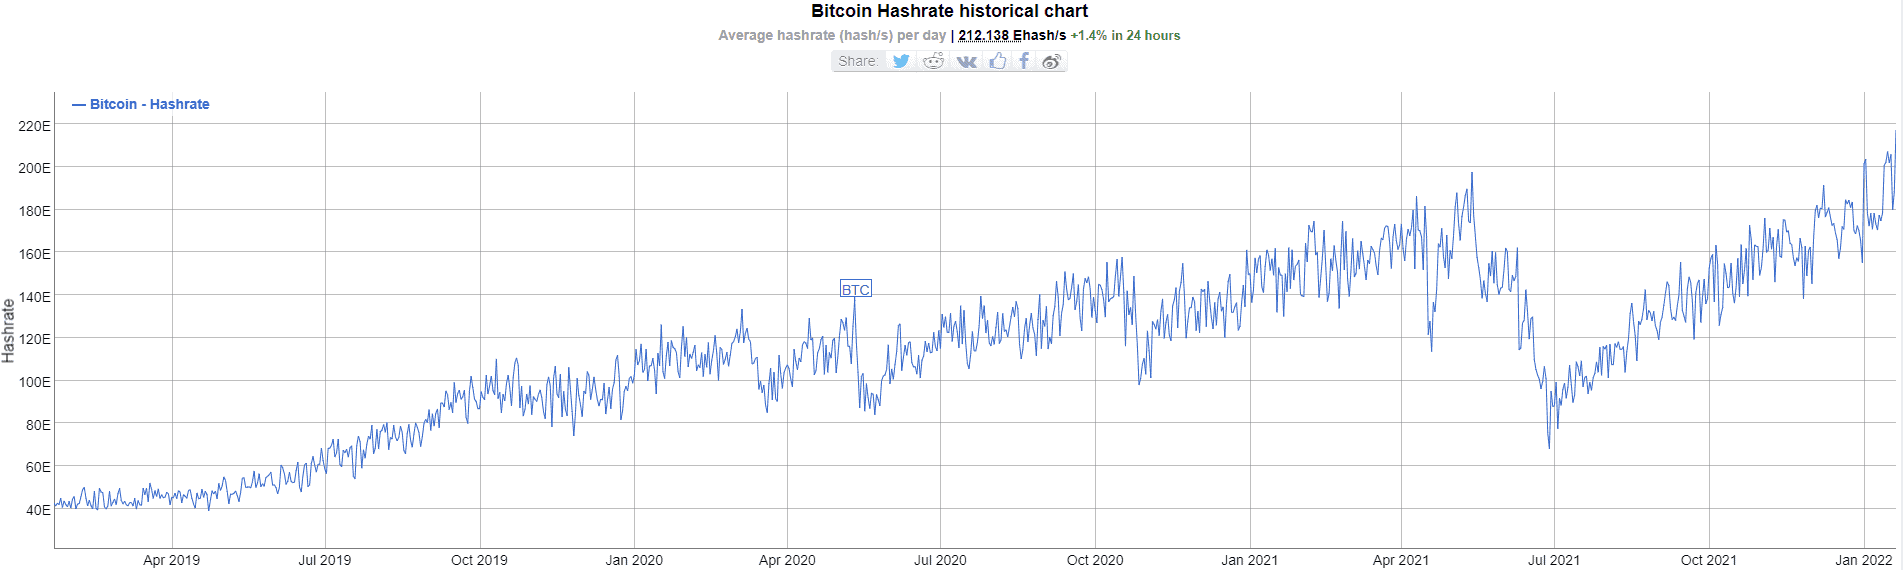 Bitcoin Hash Rate. Source: BitInfoCharts